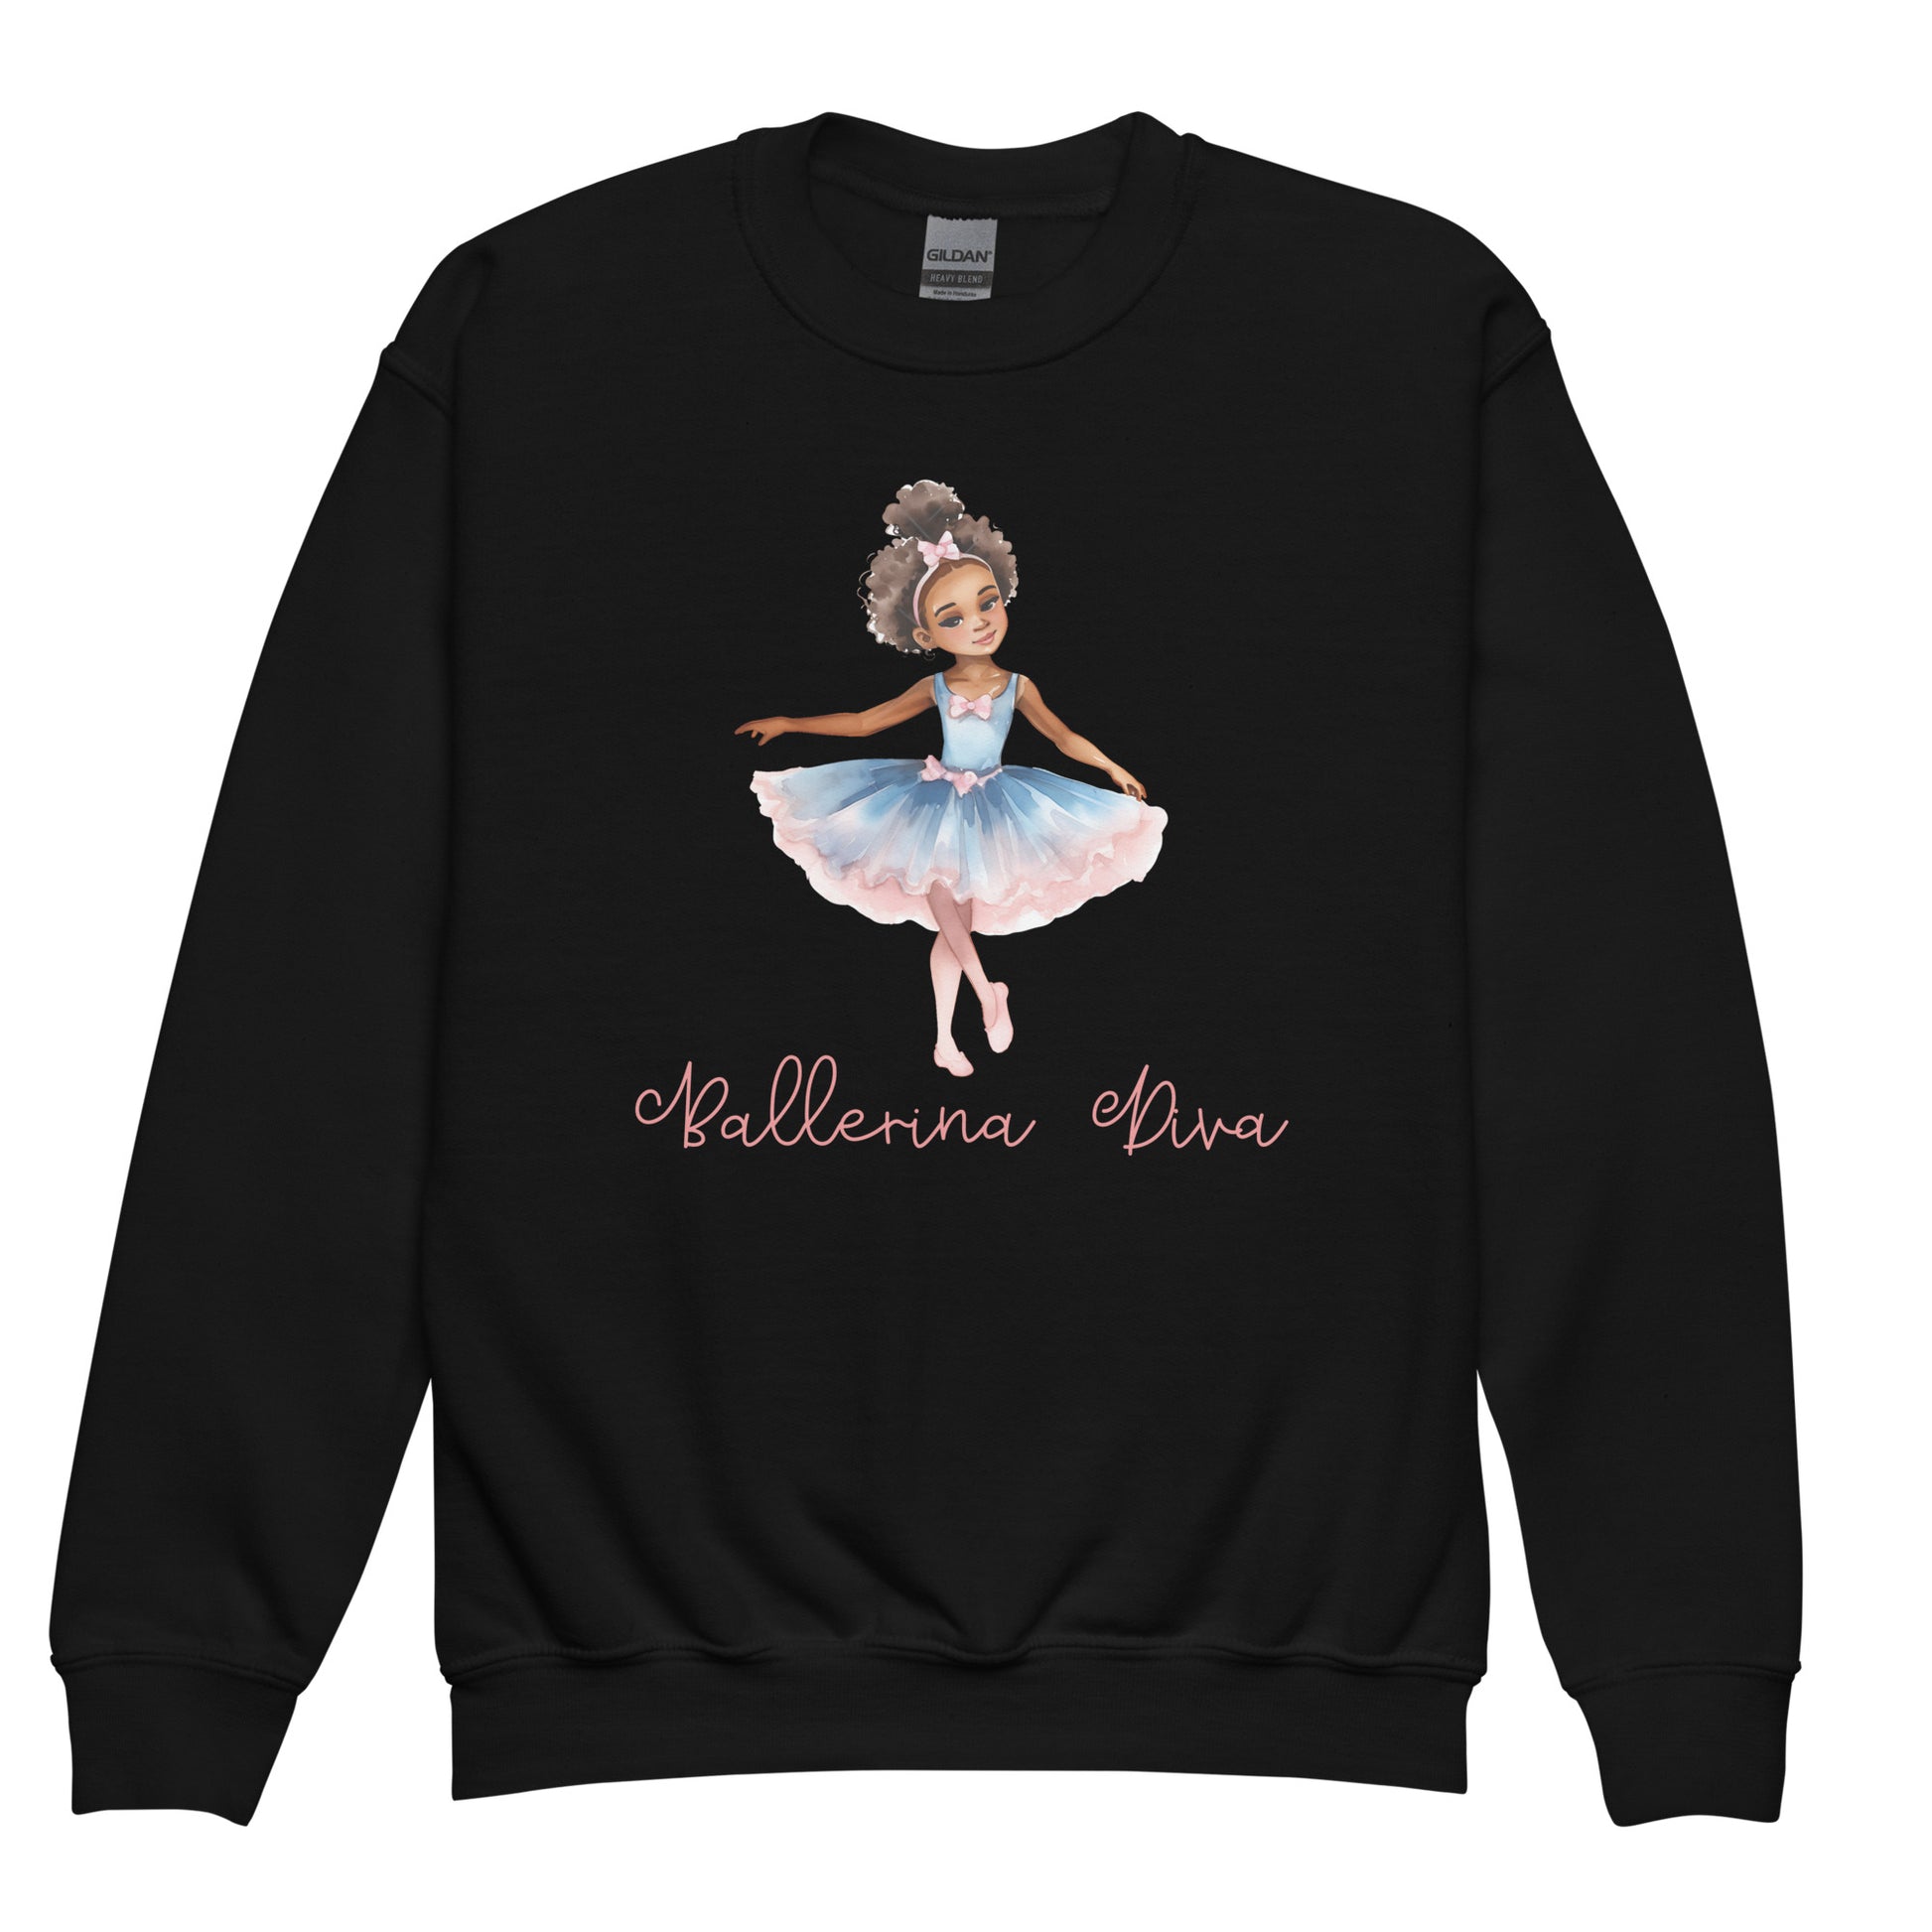 Kids Black Sweatshirt - Ballerina Diva 2 Front View of African Child Ballerina